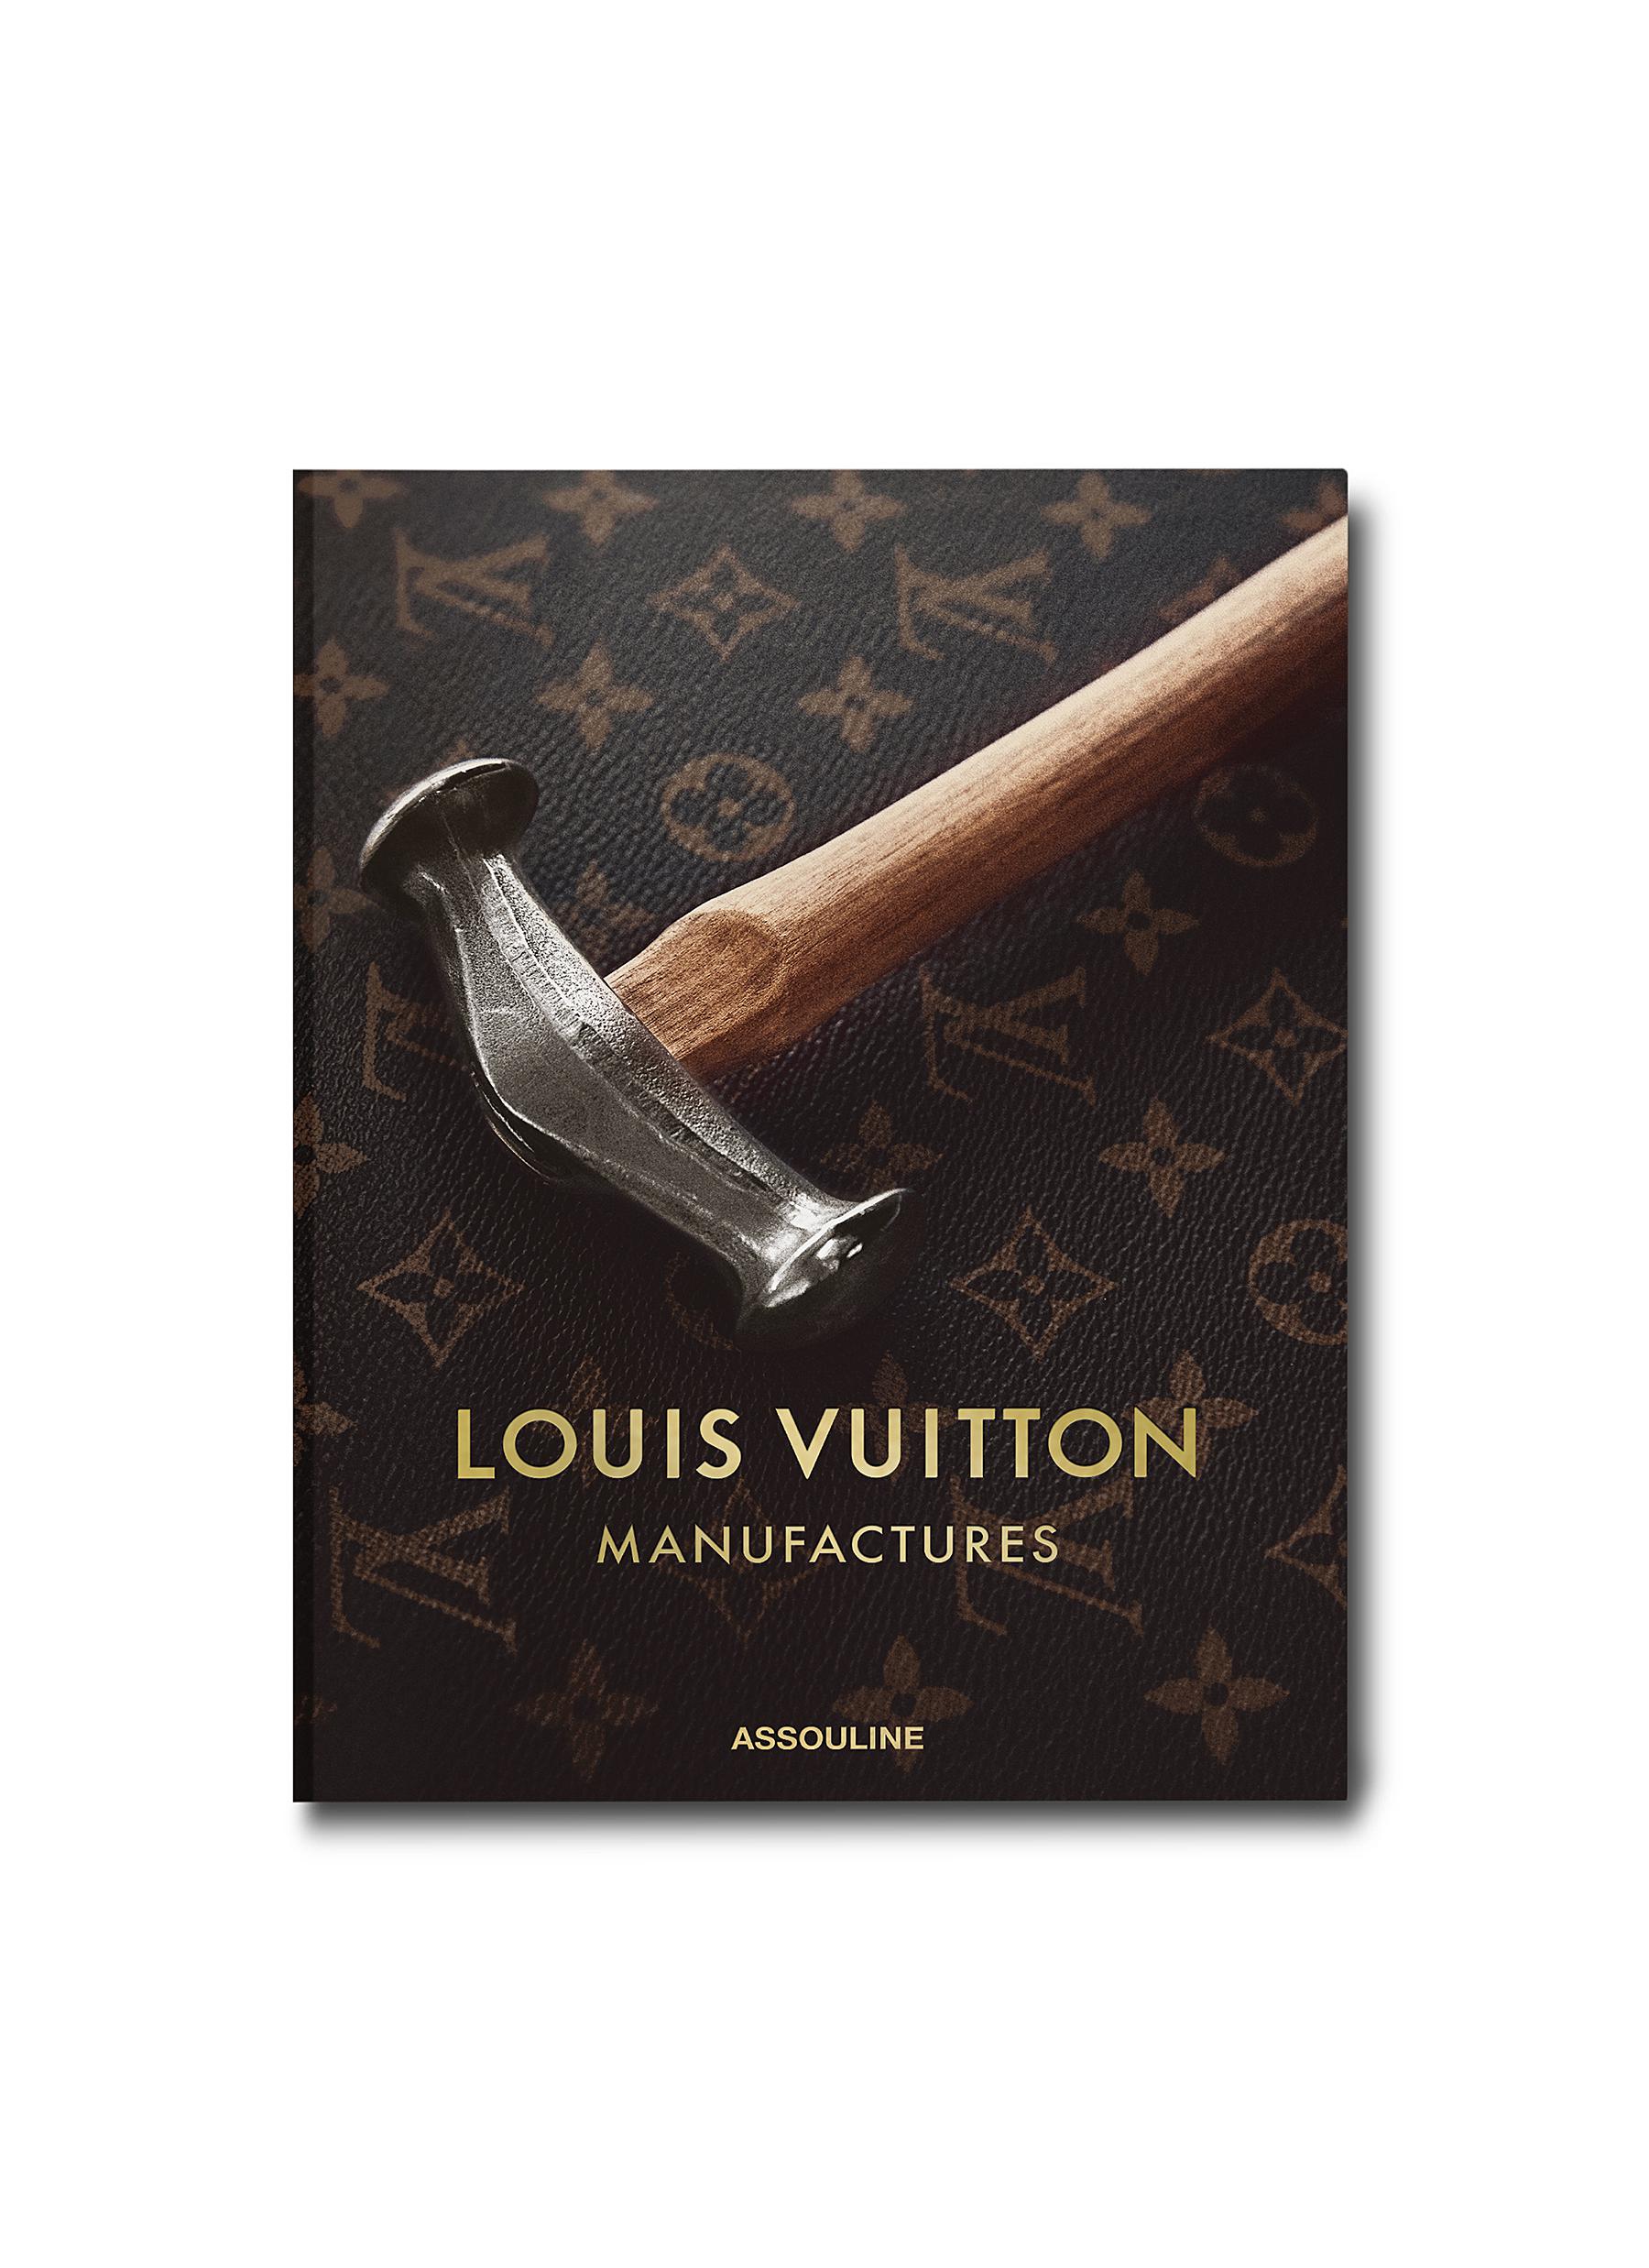 LOUIS VUITTON MANUFACTURES